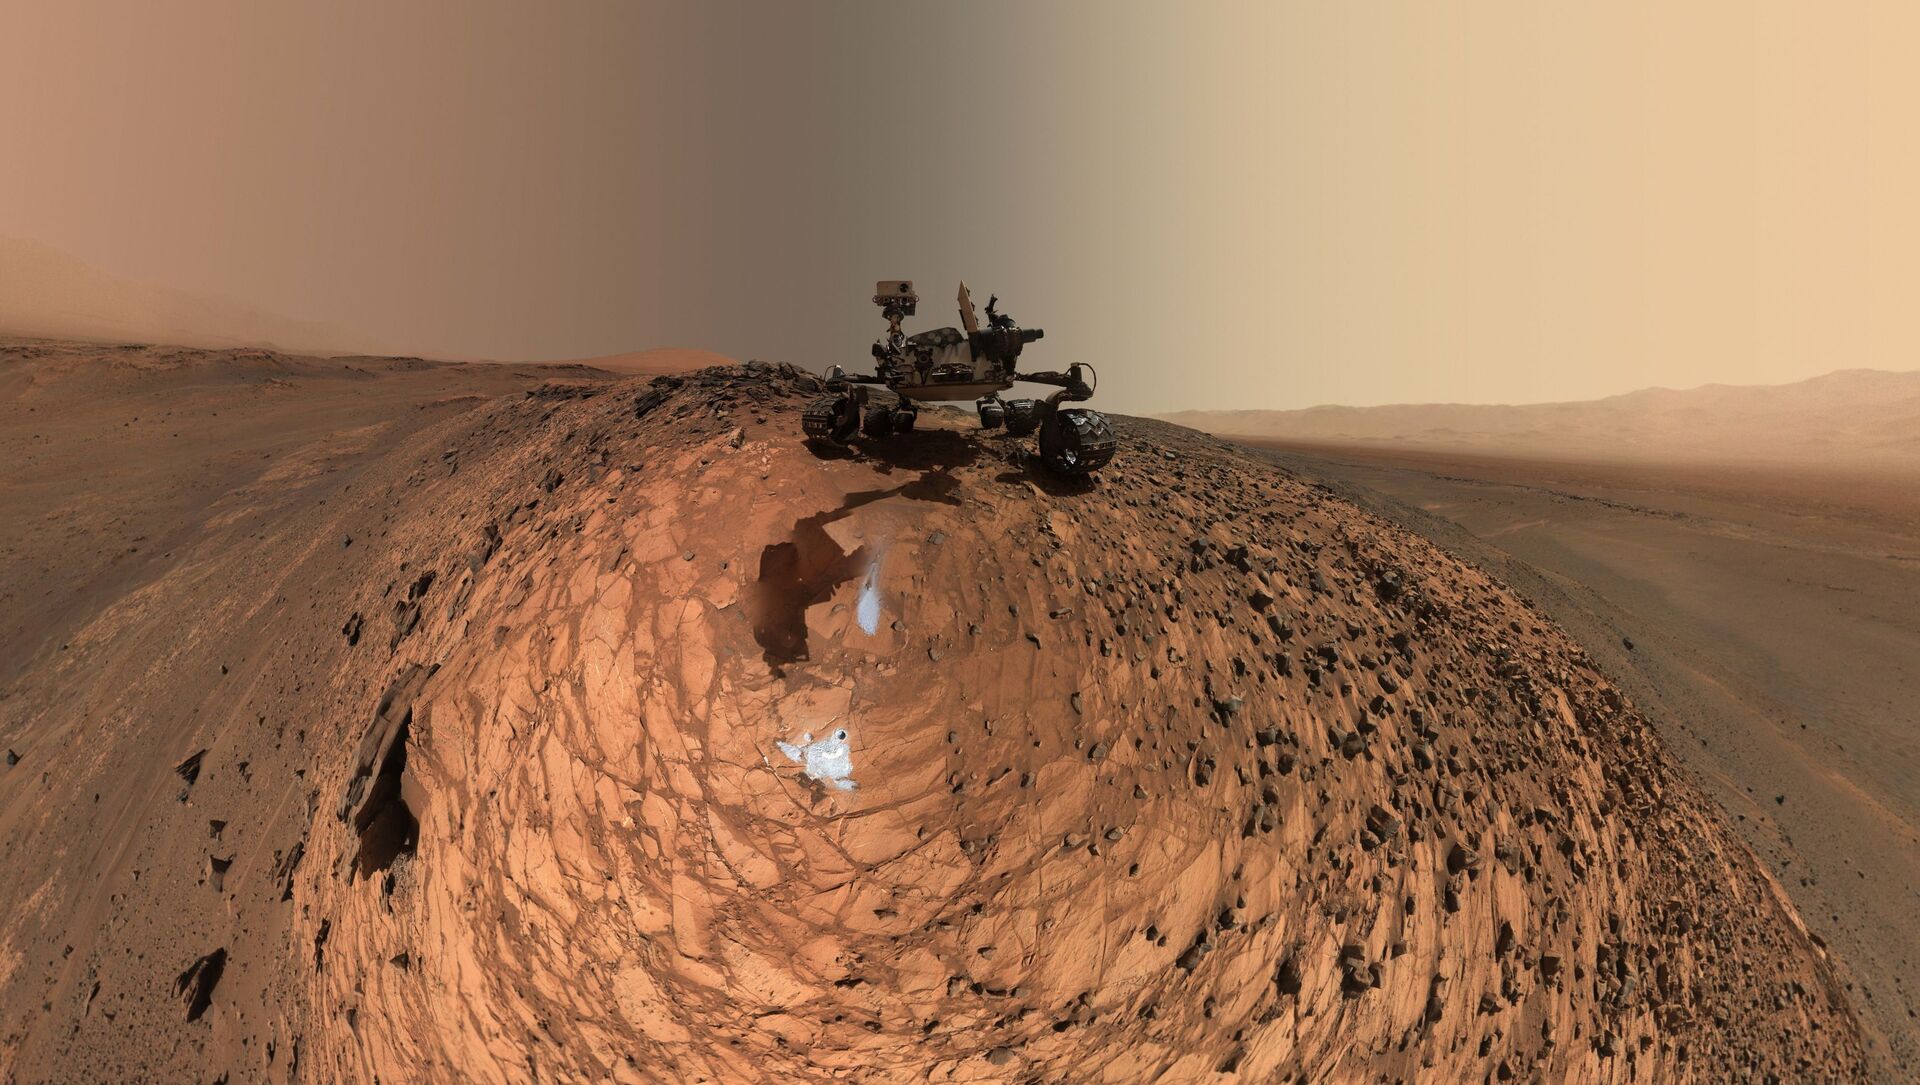 توضیح ناسا درباره تصویر رنگین کمان در مریخ + عکس  - اسپوتنیک ایران  , 1920, 12.04.2021